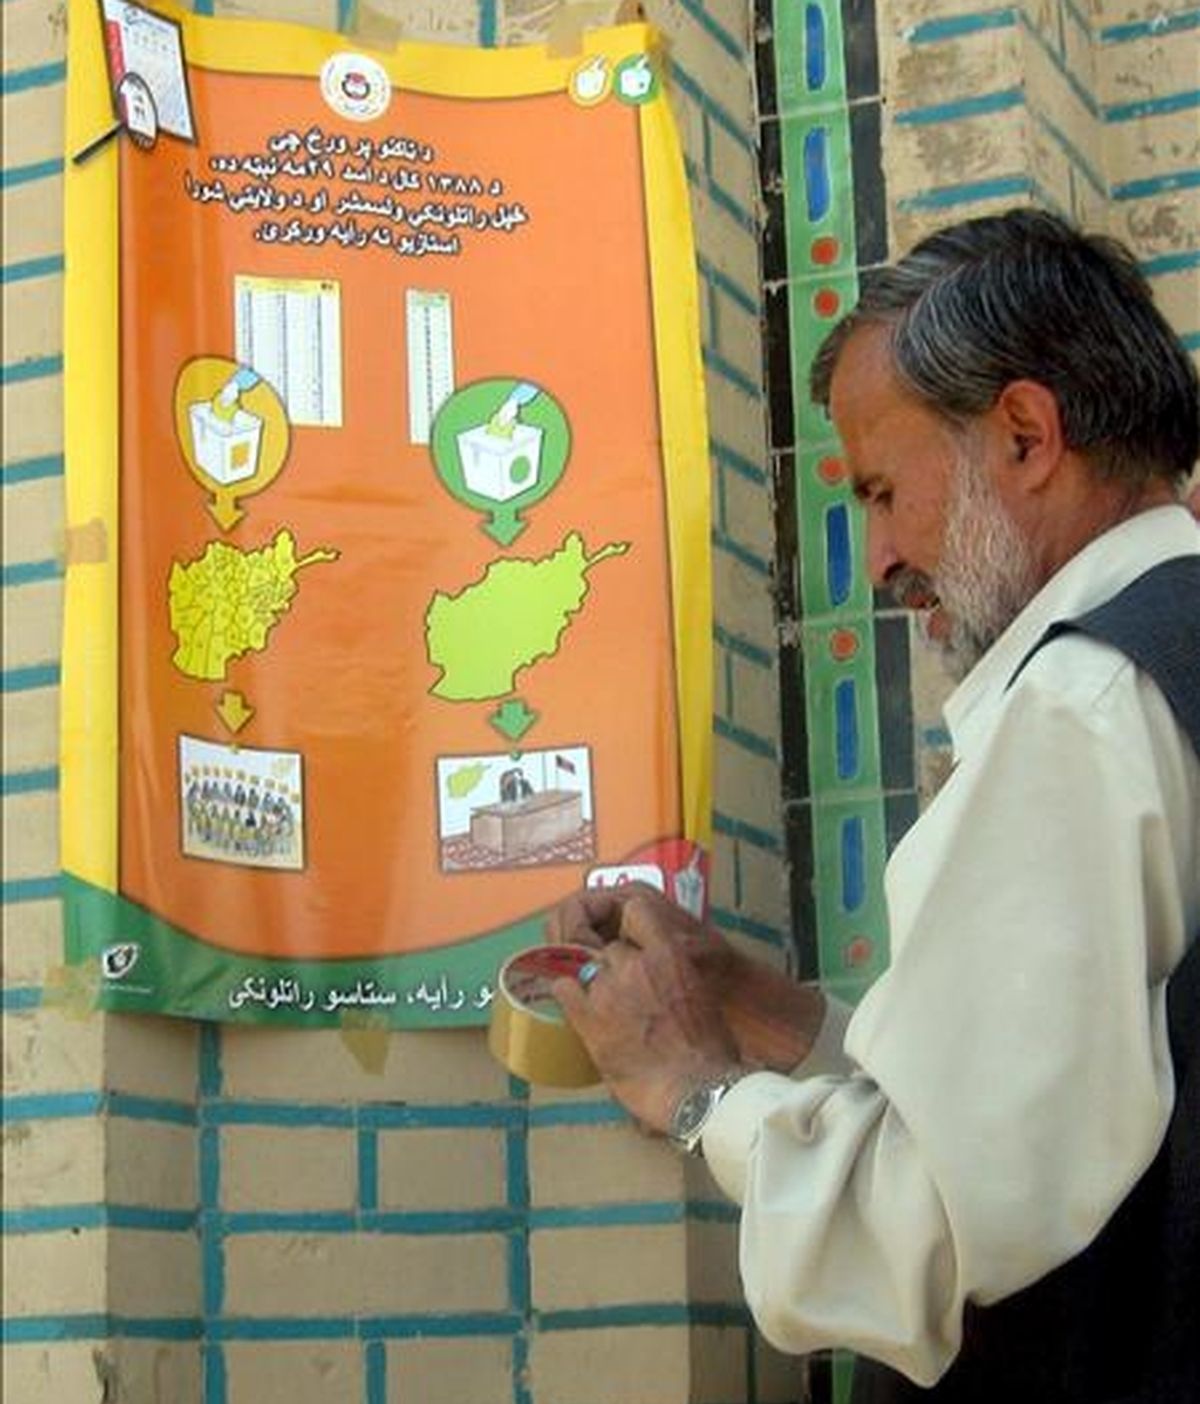 Un hombre coloca un cartel electoral en una pared en Kandahar, sur de Afganistán, hoy martes 16 de junio. Afganistán celebrará elecciones presidenciales el próximo 20 de agosto. EFE